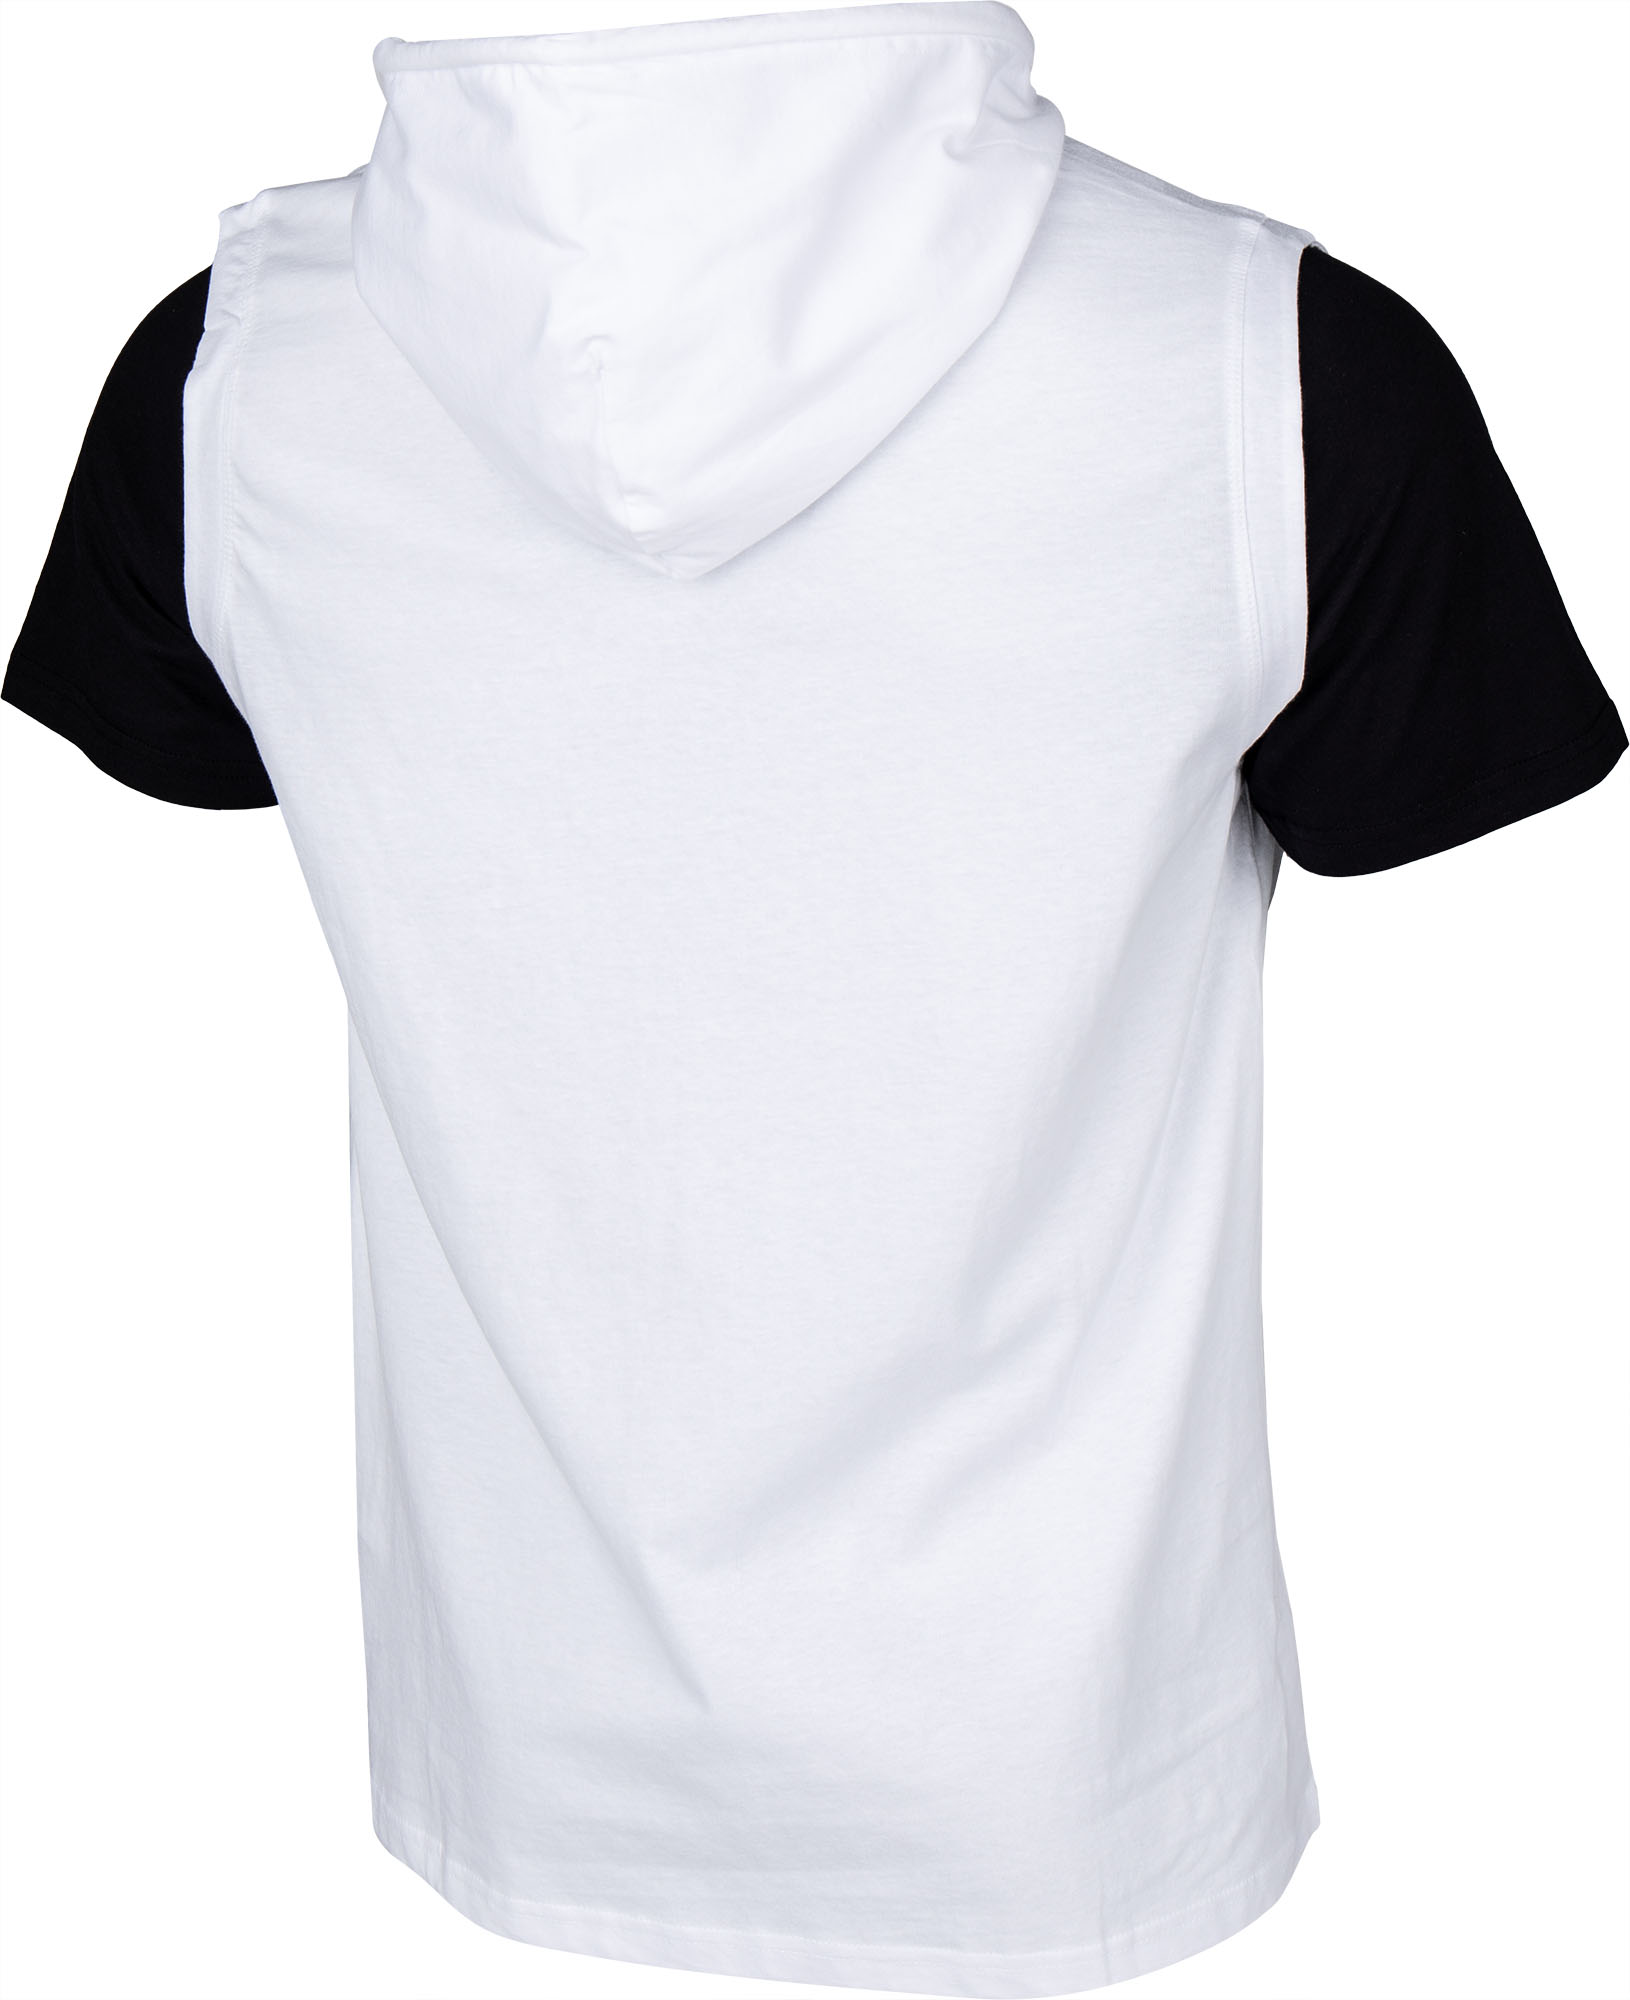 Men’s T-shirt with a hood